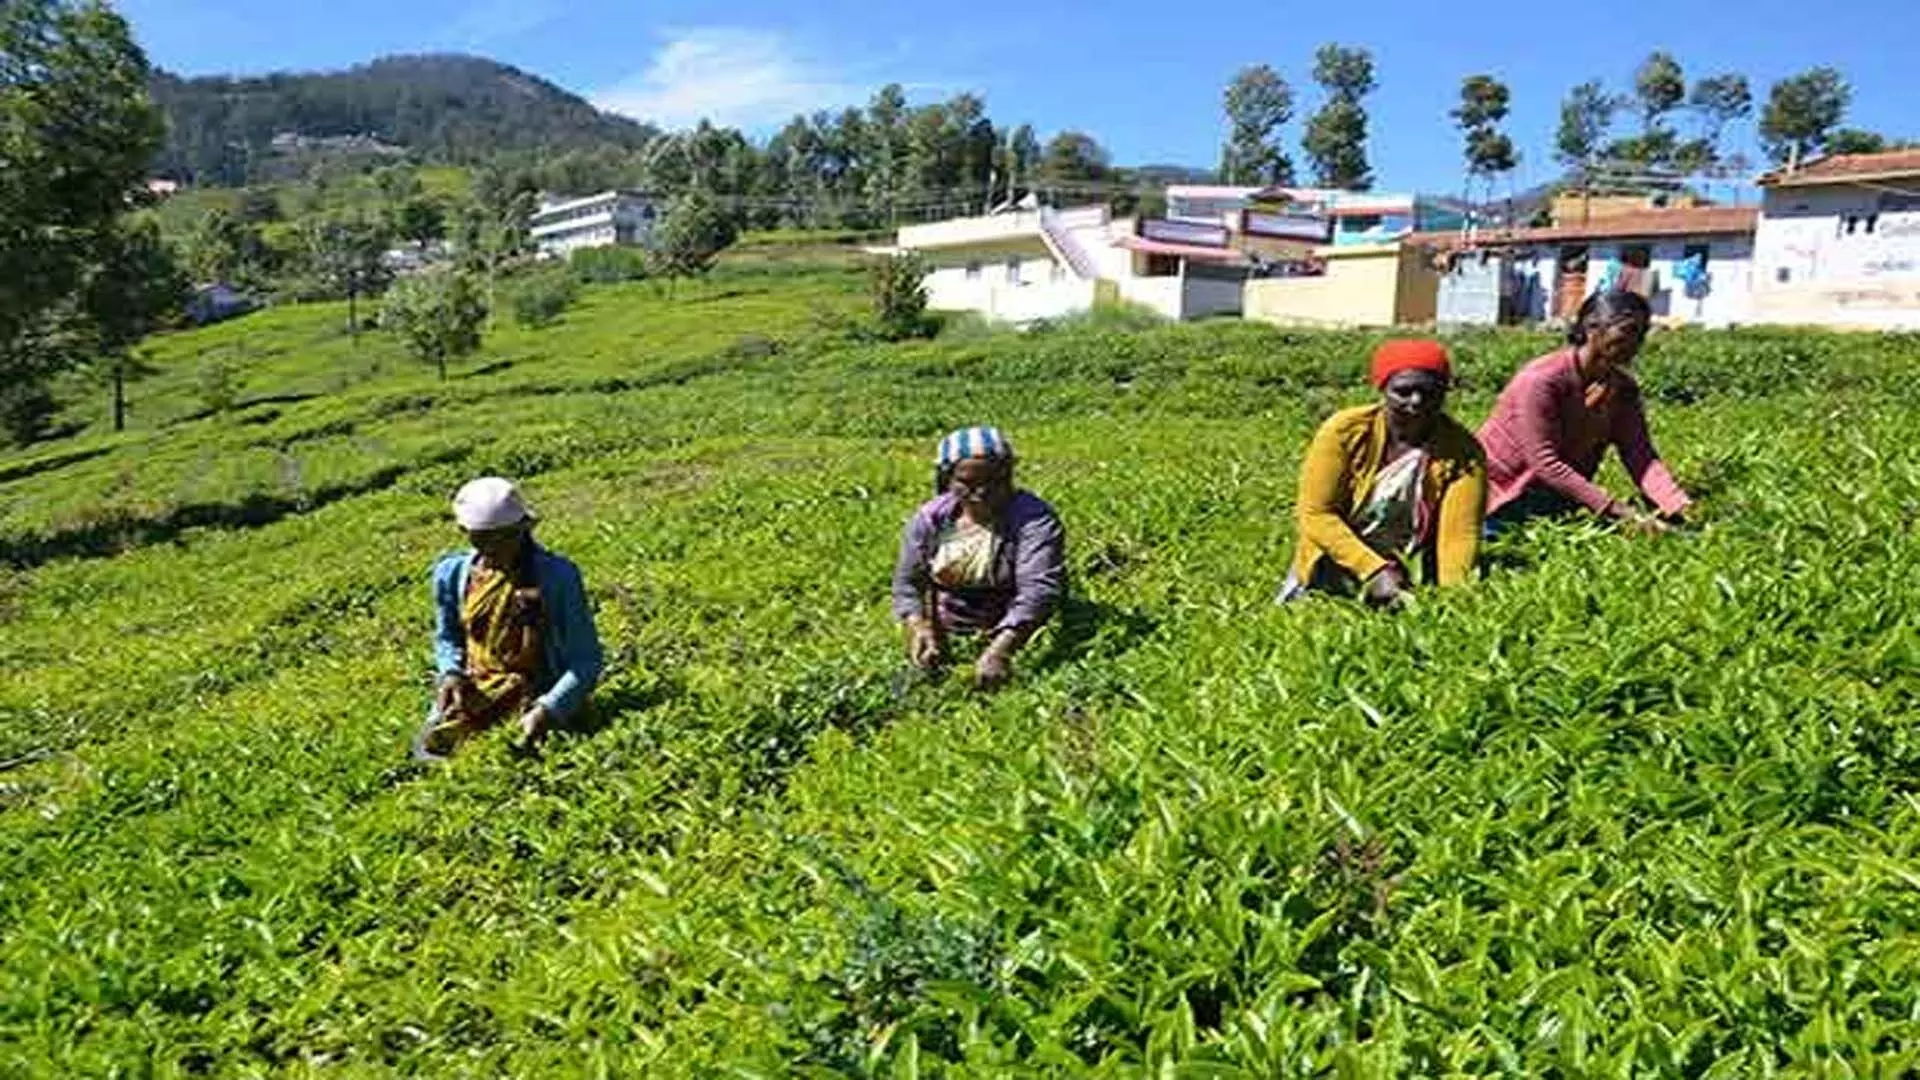 African, एशियाई चाय उत्पादकों ने वैश्विक मांग-आपूर्ति असंतुलन पर चिंता जताई